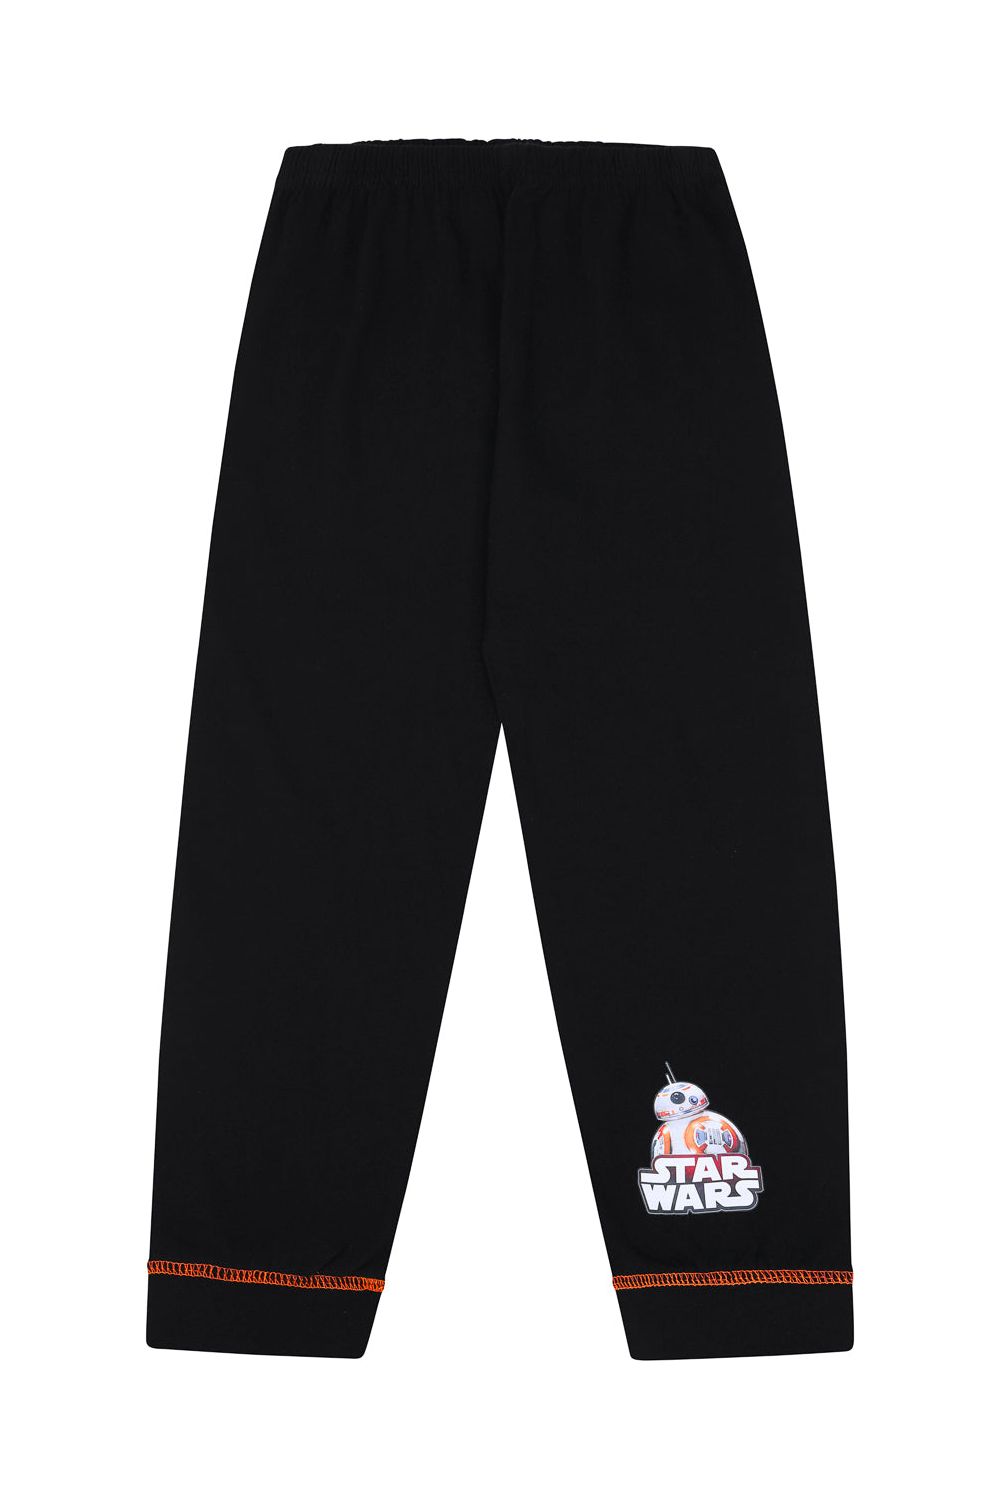 Boys Star Wars Long Pyjamas - Pyjamas.com